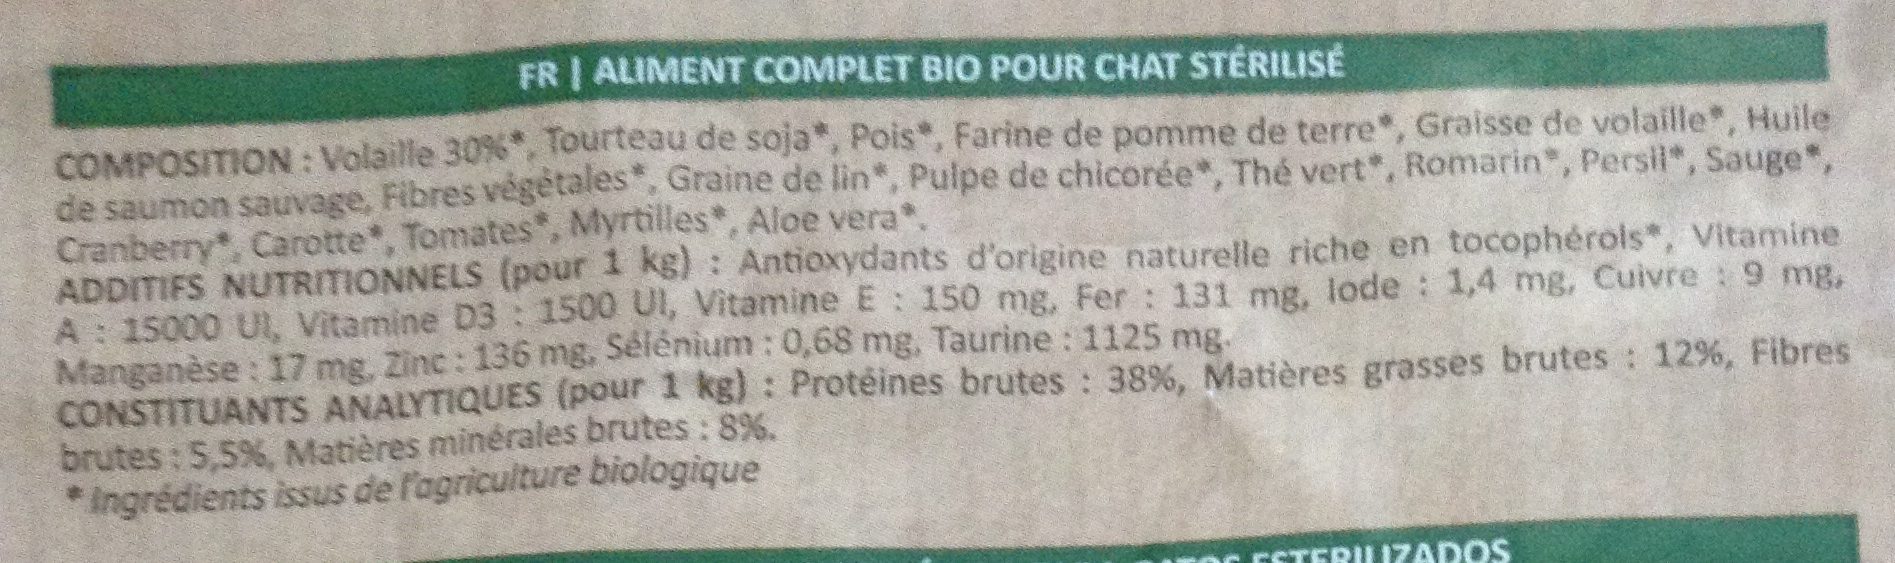 Bio organic pet food pour chat stérilisé - Ingredients - fr